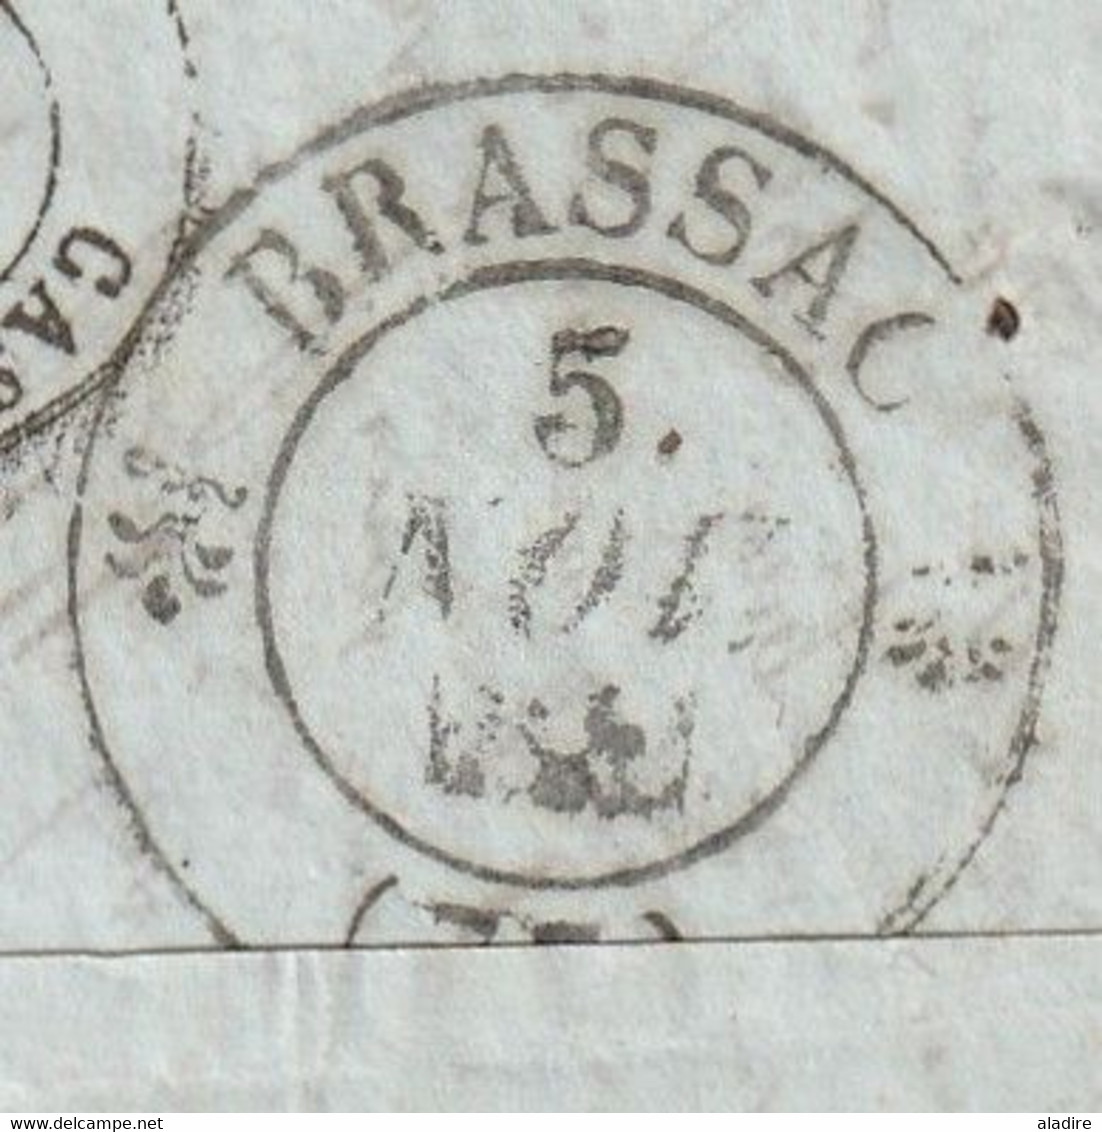 1841 -  Marque postale M couronné en rouge de Madrid sur Lettre pliée en français vers Brassac, Tarn, France